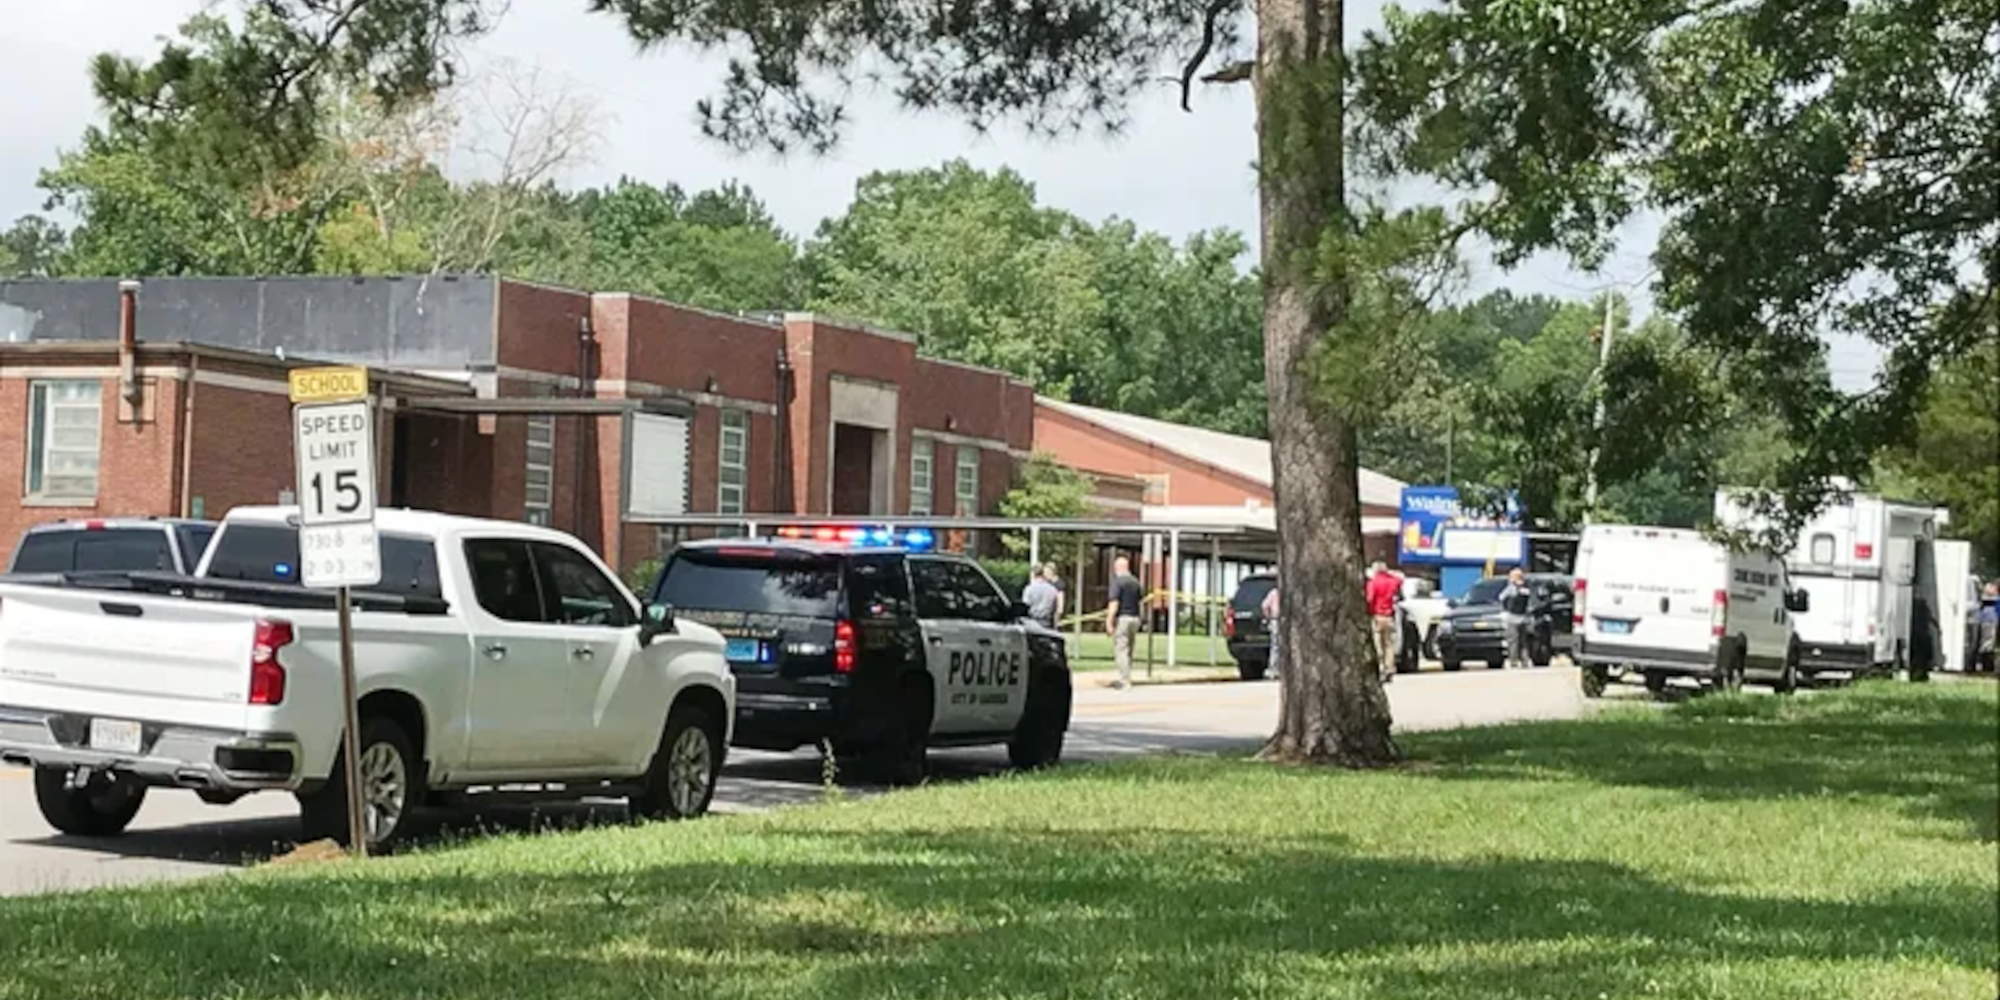 Περιπολικό στην κομητεία της Αλαμπάμα έξω από σχολείο όπου συνέβη το περιστατικό